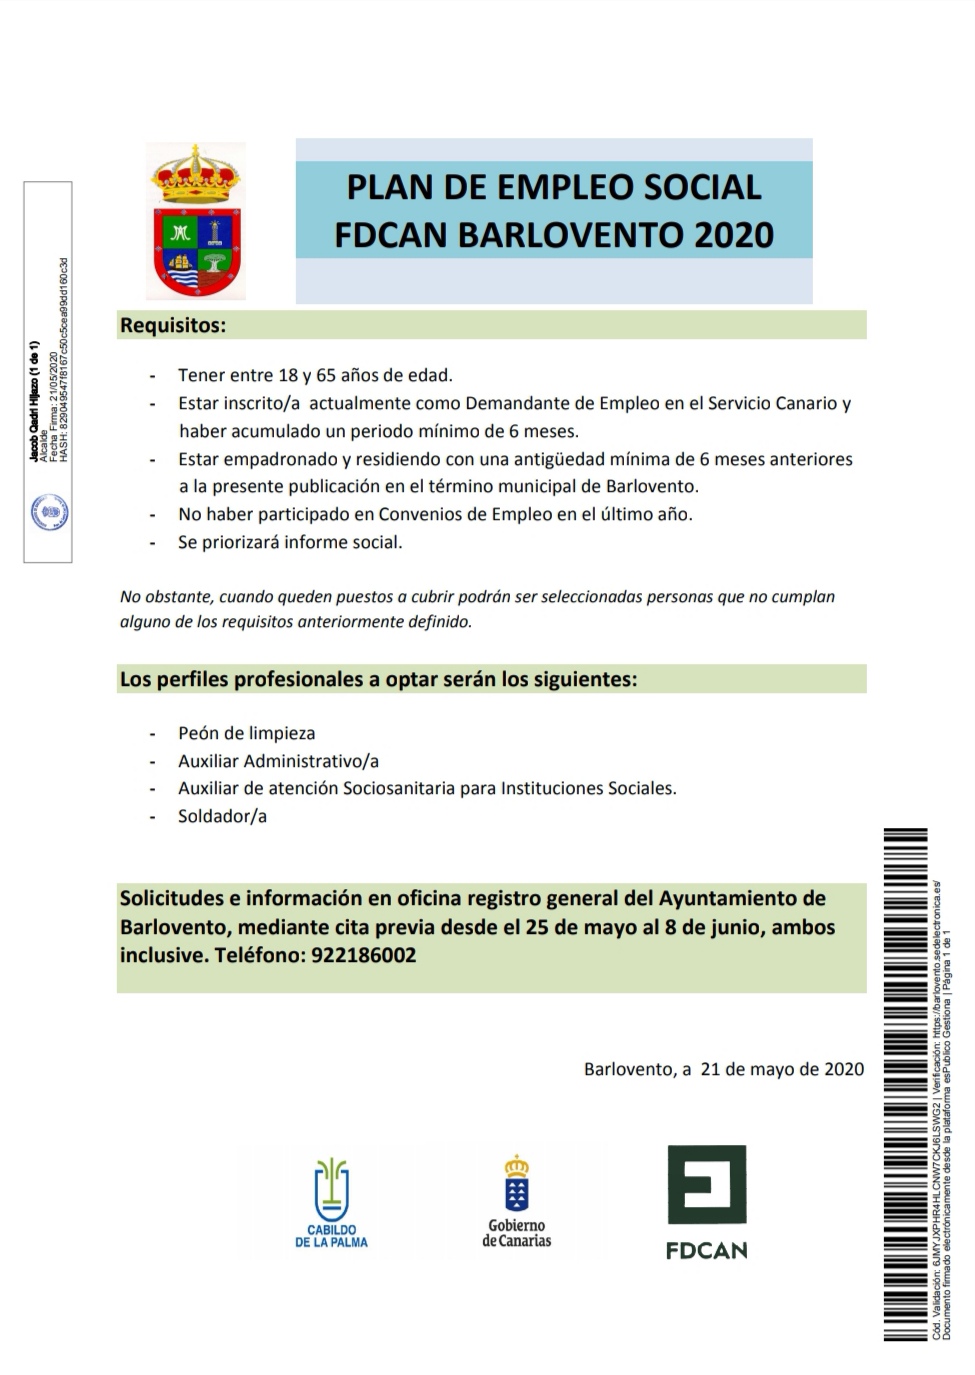 PLAN DE EMPLEO SOCIAL FDCAN BARLOVENTO 2020